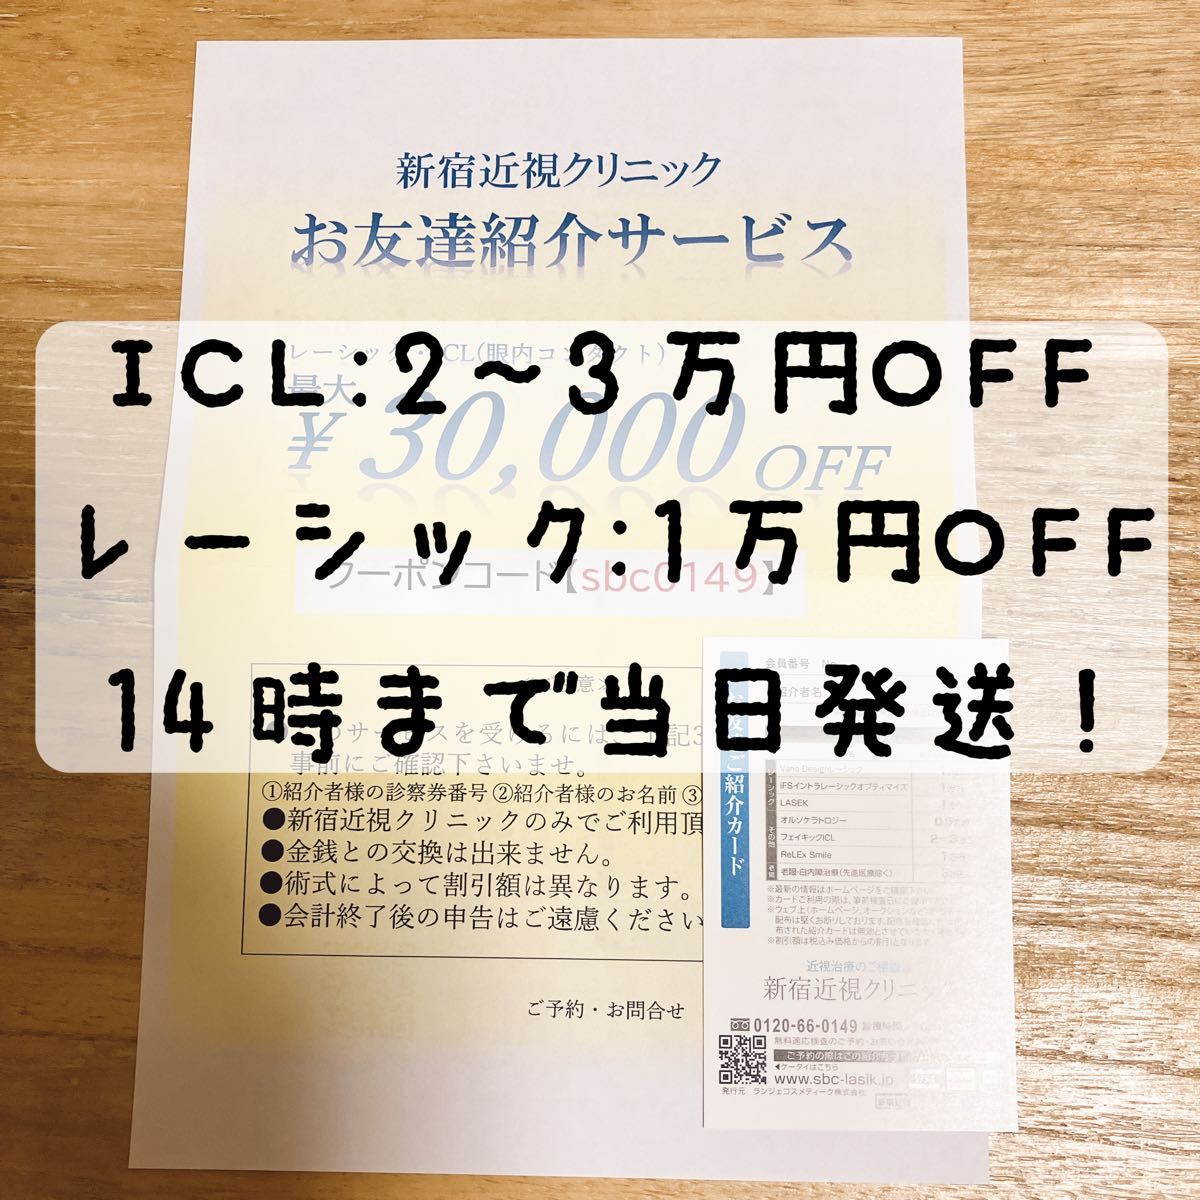 新宿近視クリニック 友達紹介カード ICL レーシック